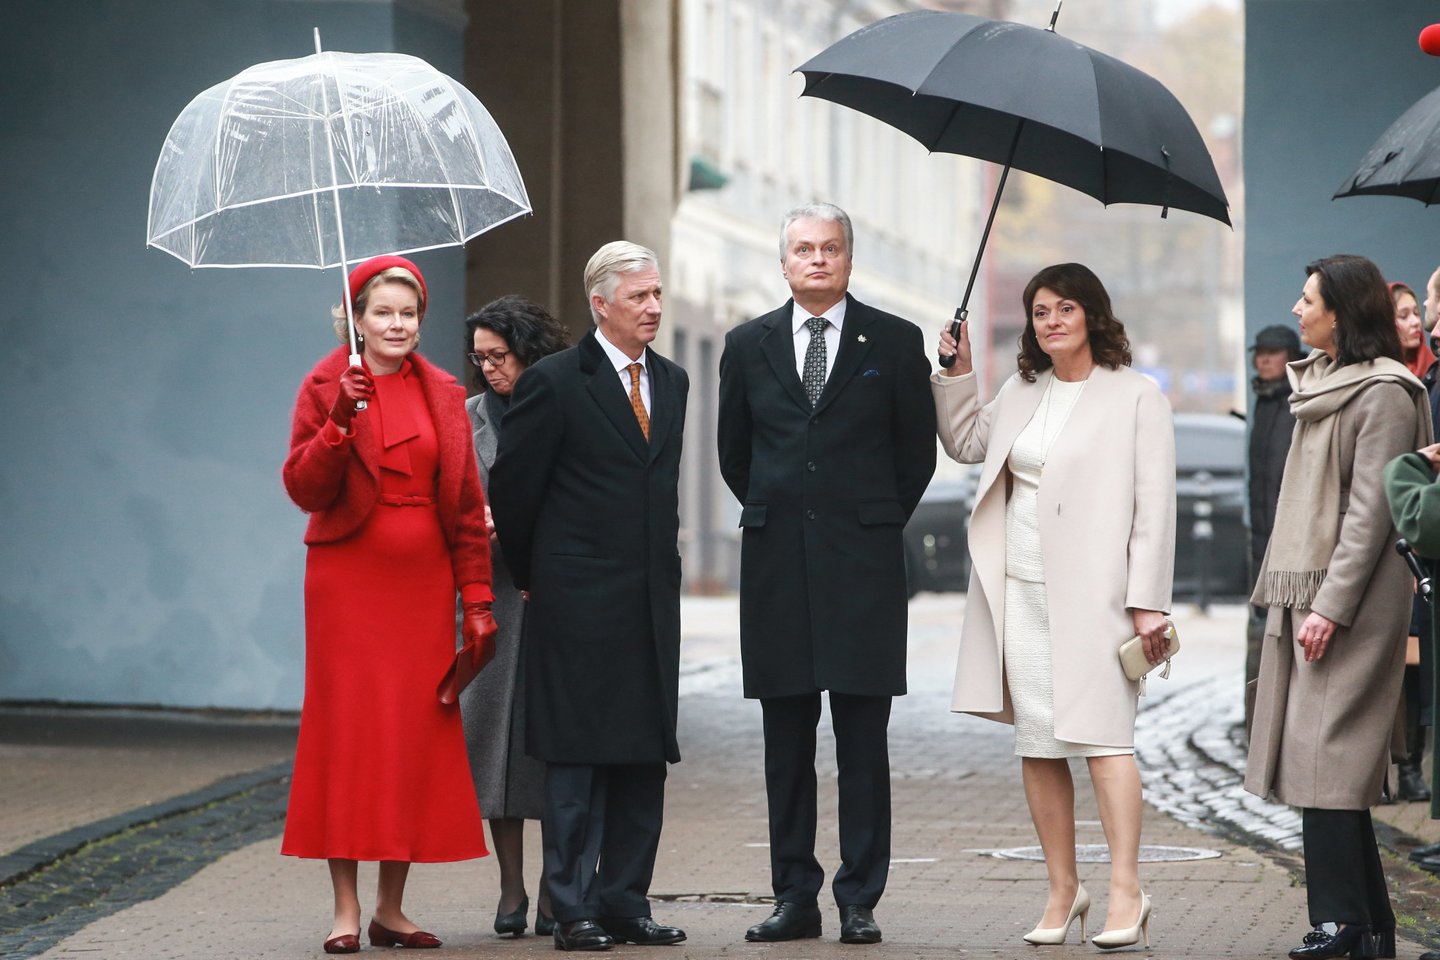  Karaliai su Diana ir Gitanu Nausėdomis vaikščiojo po Vilnių, lankėsi bažnyčioje ir Vilniaus universitete.  <br>  R.Danisevičiaus nuotr.